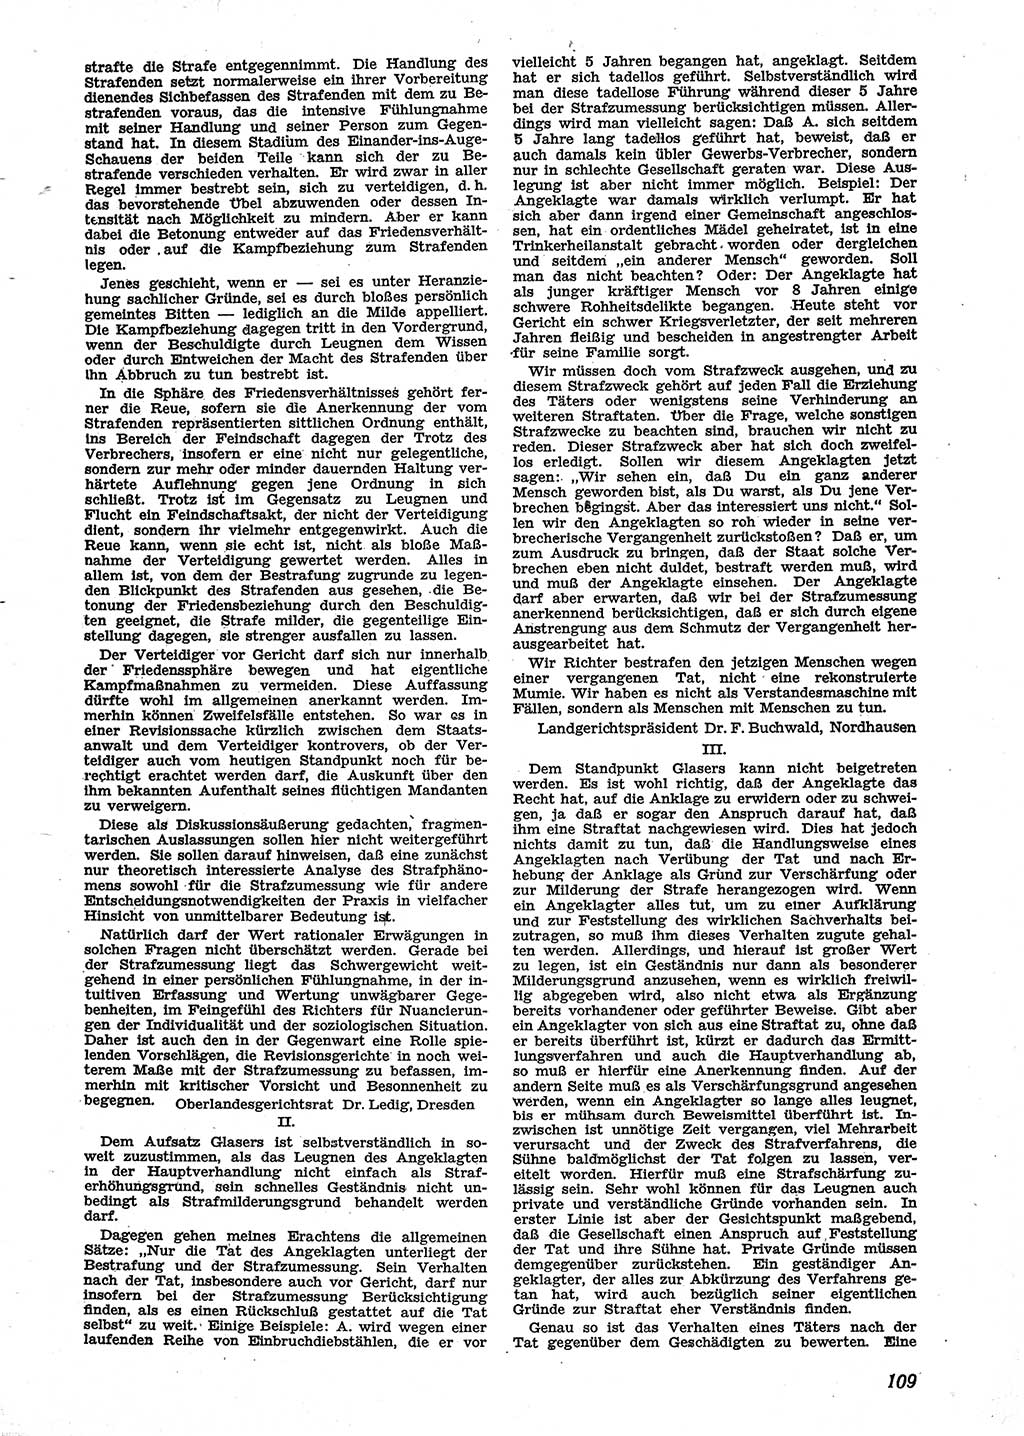 Neue Justiz (NJ), Zeitschrift für Recht und Rechtswissenschaft [Sowjetische Besatzungszone (SBZ) Deutschland], 2. Jahrgang 1948, Seite 109 (NJ SBZ Dtl. 1948, S. 109)